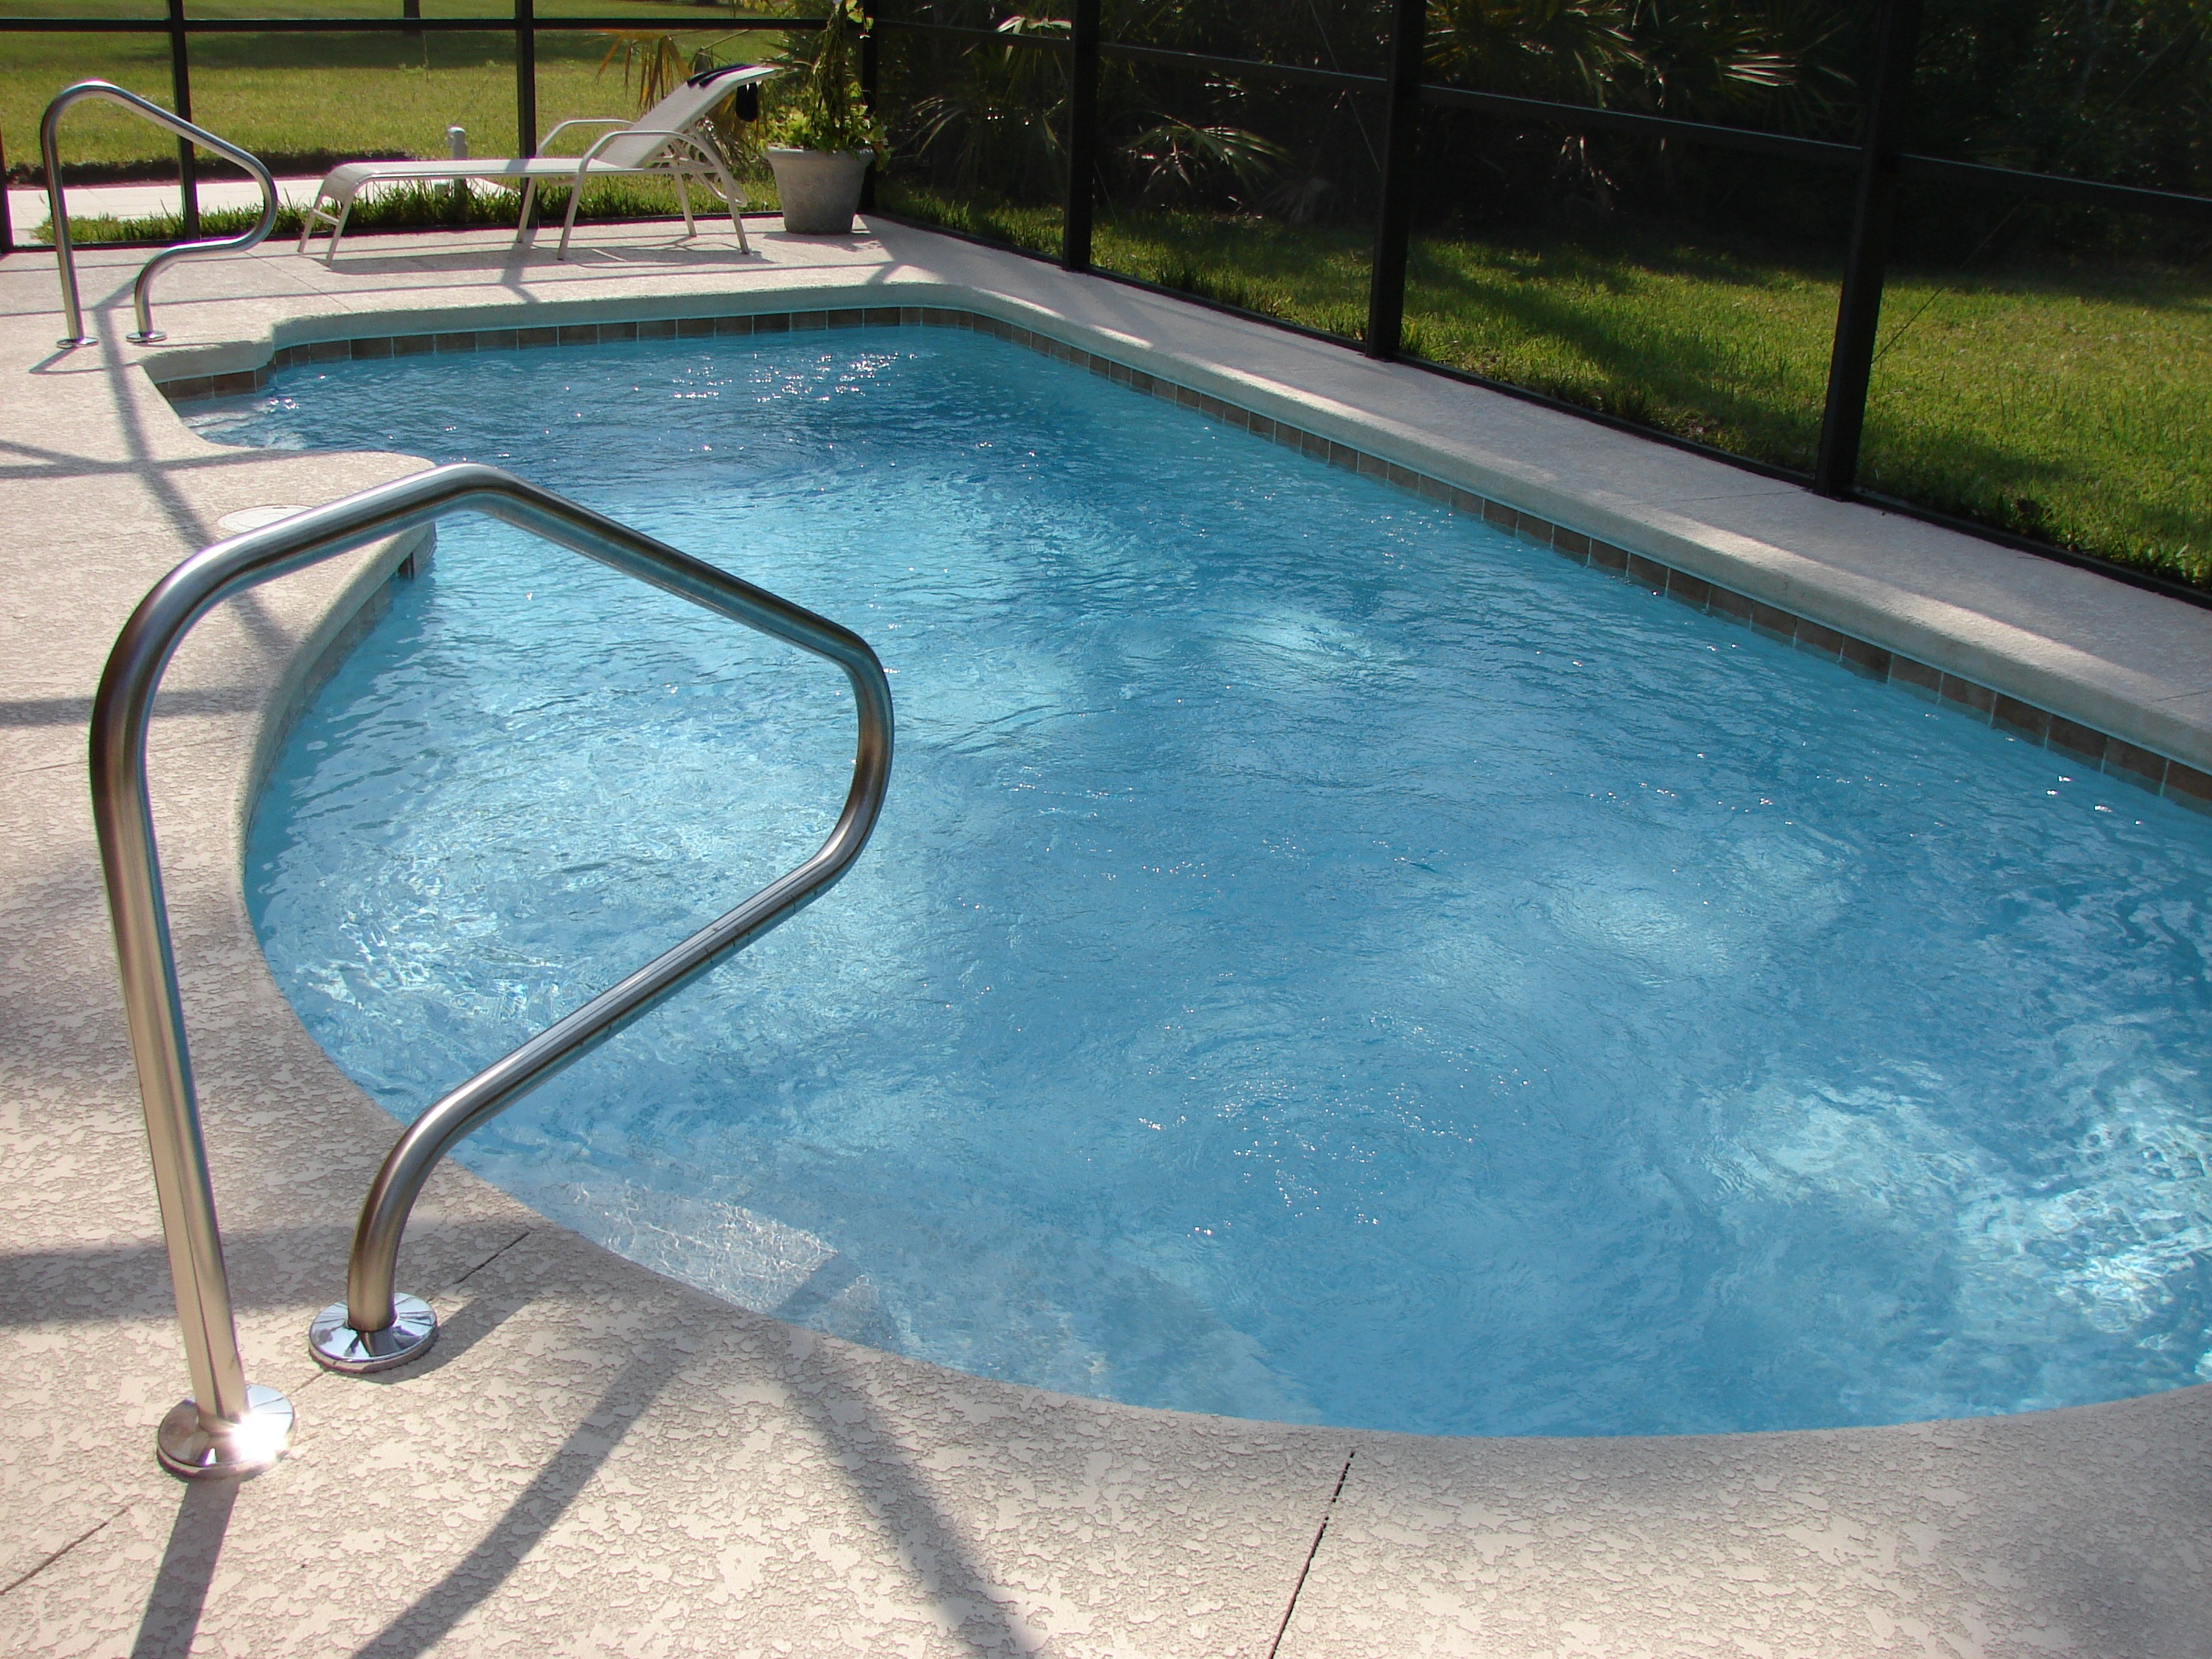 Swimming Pool Maintenance, Repair, Equipment and More - MCM Pool Service,  Norton MA